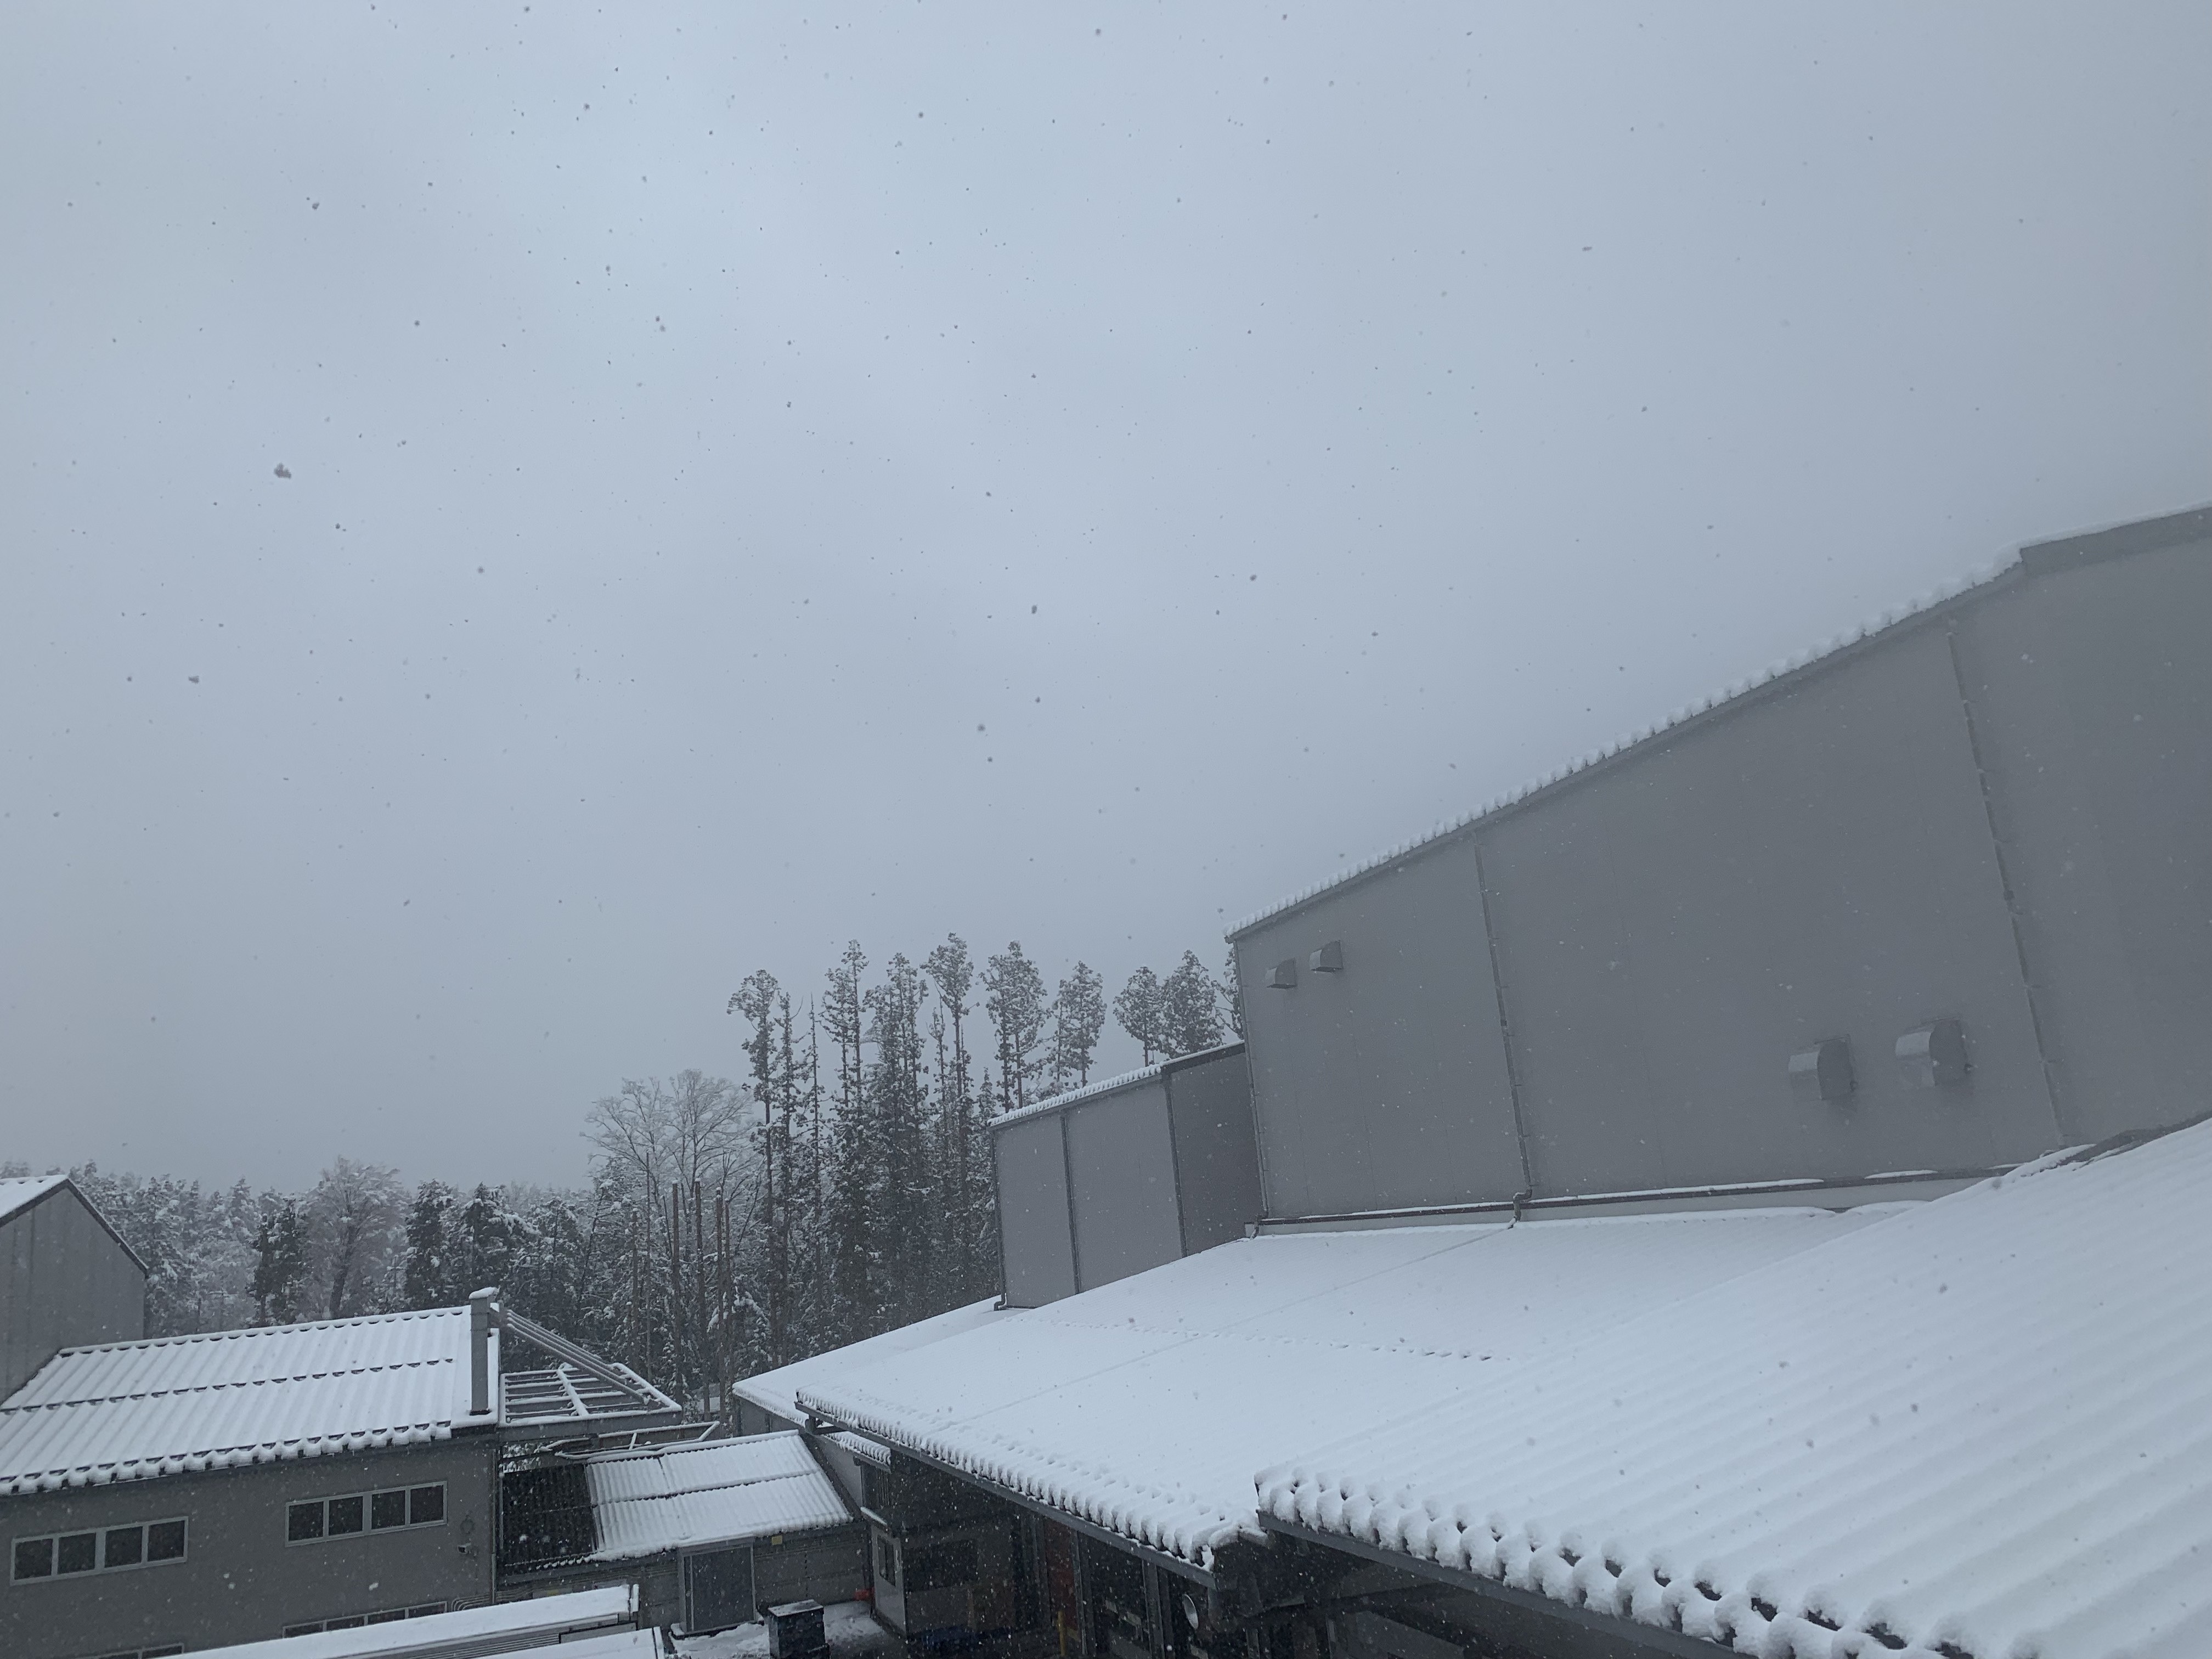 フレシャス工場での降雪の様子